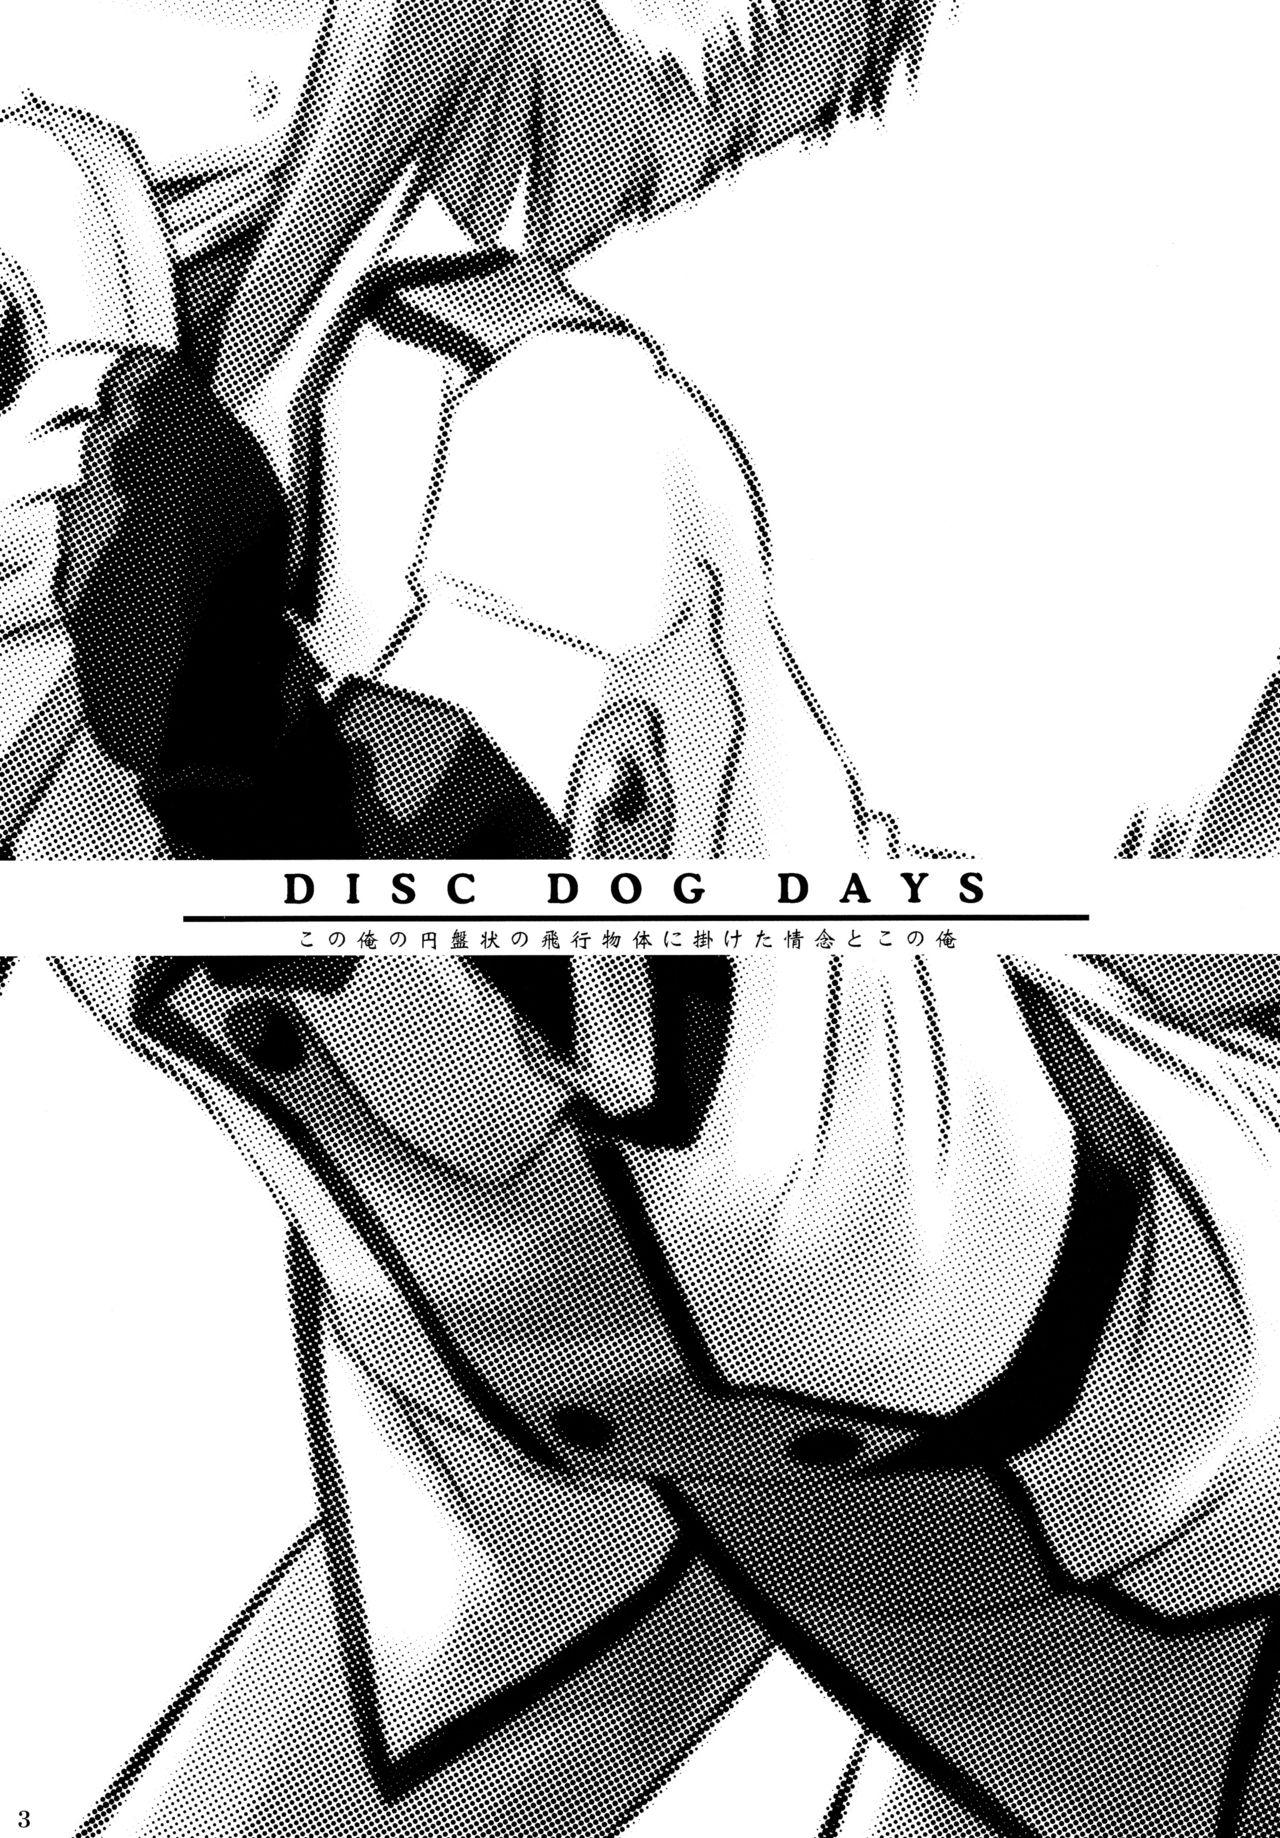 [爆猫] D3 (Disc Dog Days) ディーキューブ (DOG DAYS) 1